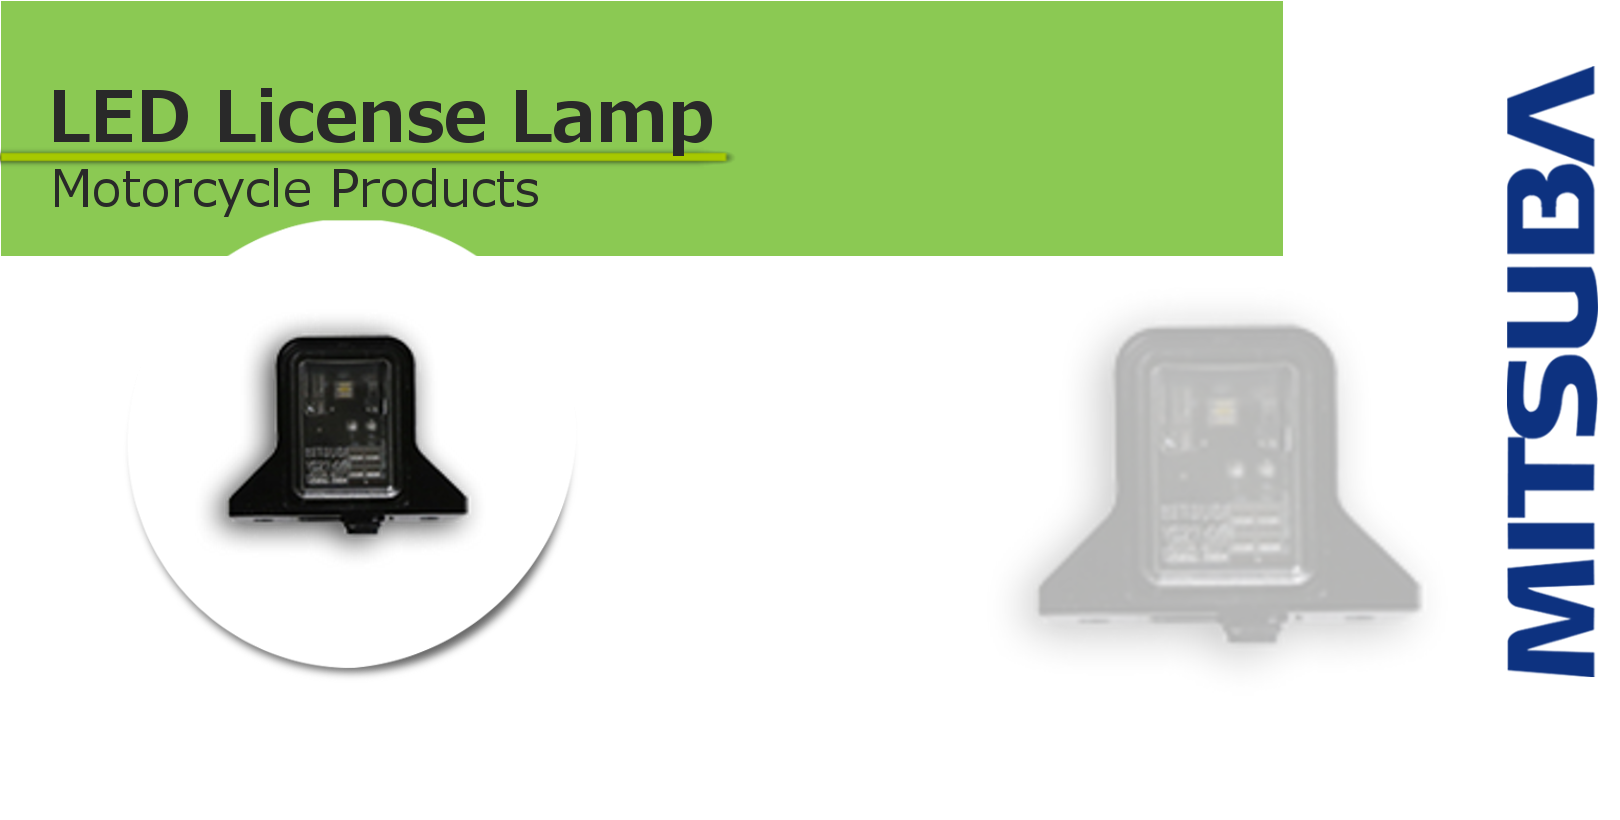 LED license lamp